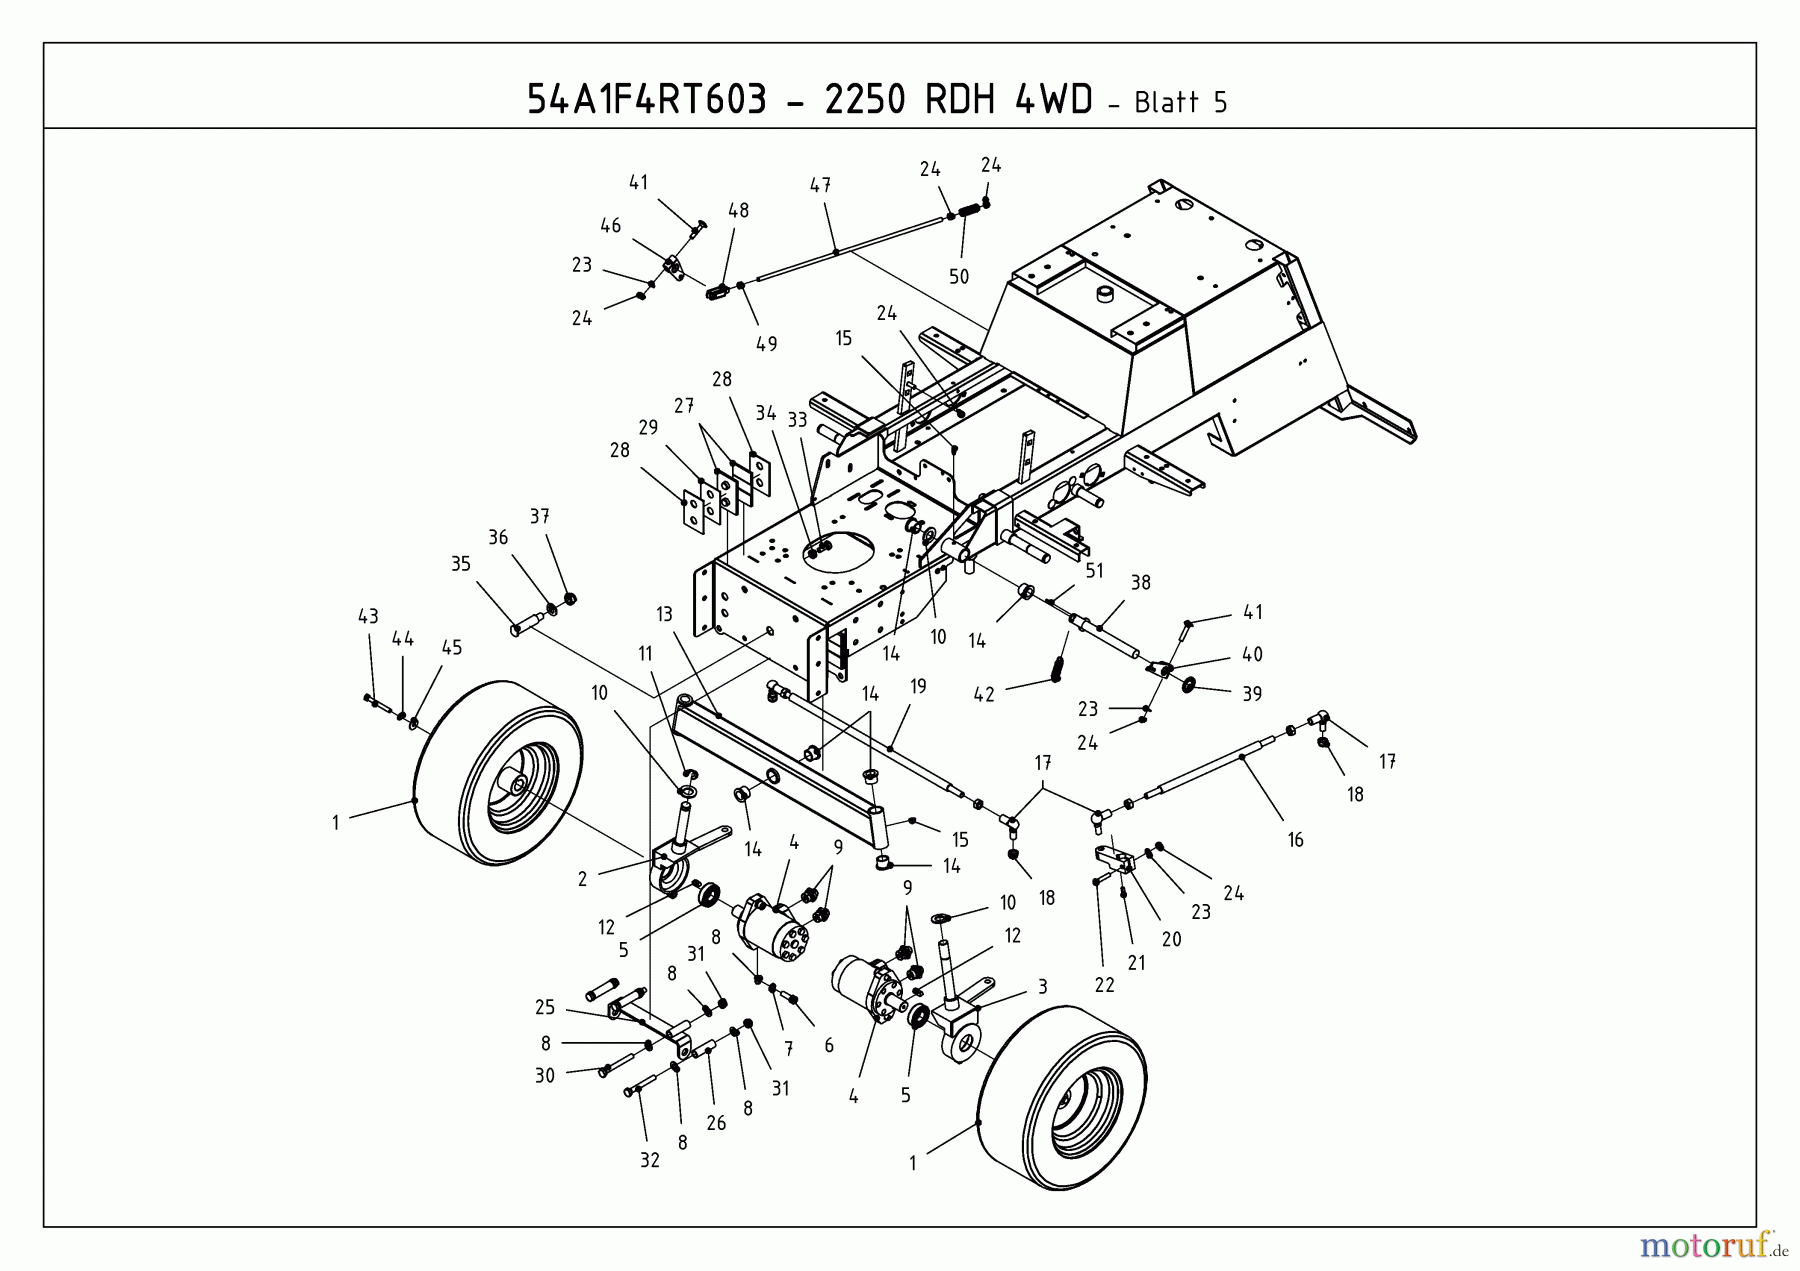  Massey Ferguson Kompakttraktoren MF 21-25 RD 4 WD 54A1F4RT695  (2009) Räder vorne, Vorderachse